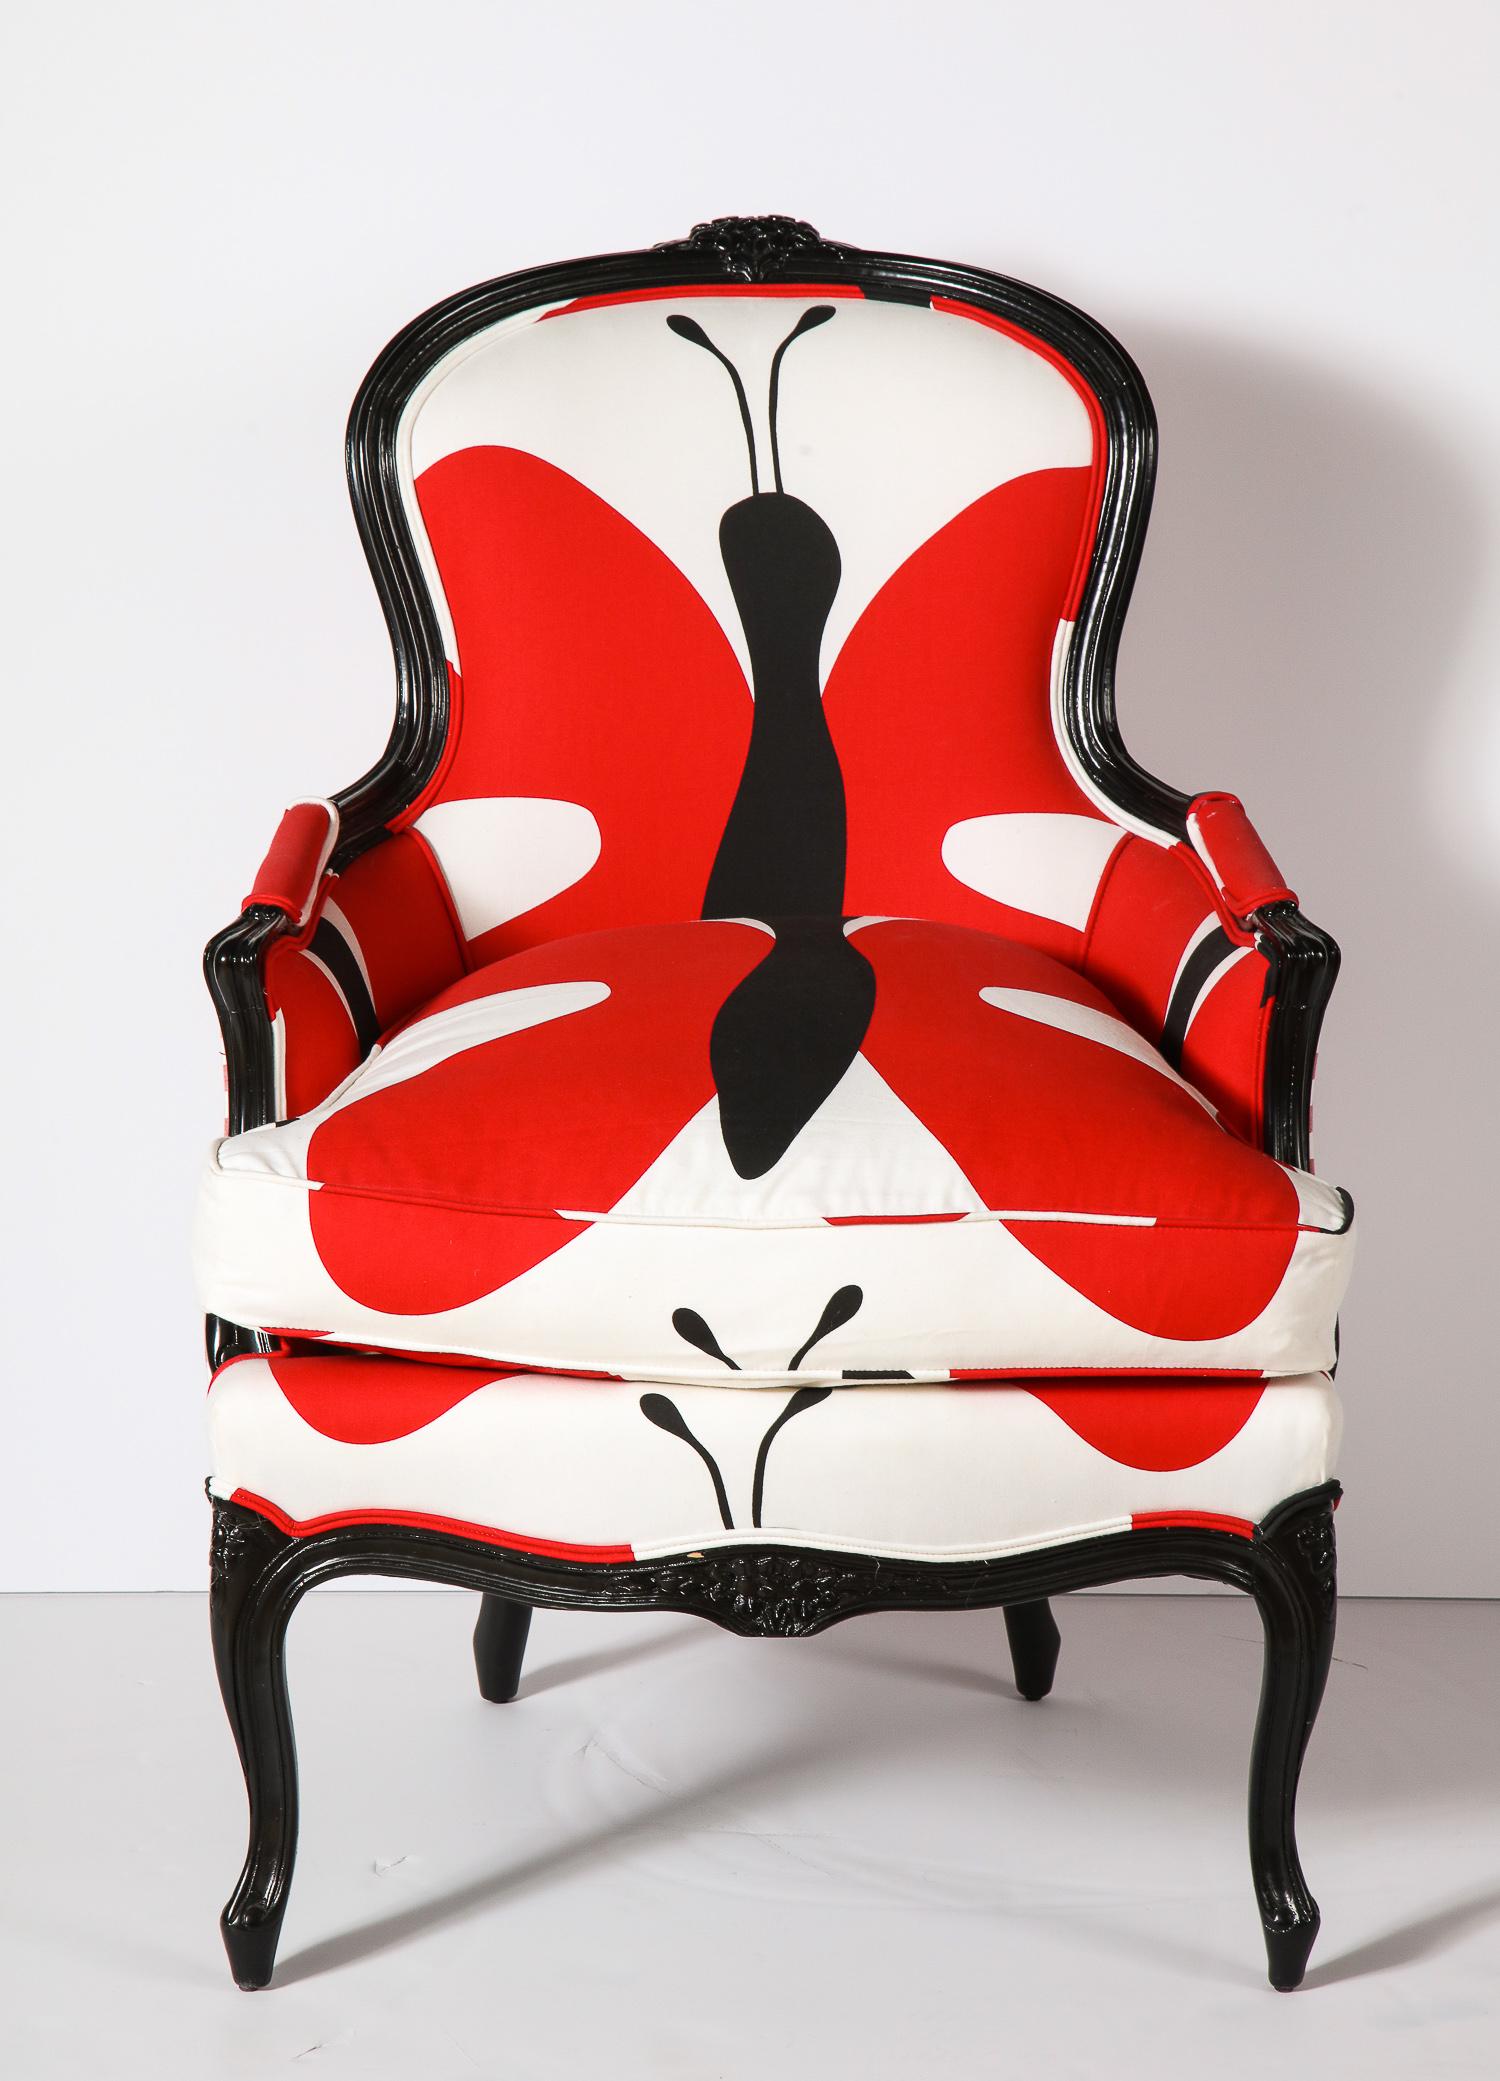 Dekorativer Vintage-Stuhl Bergère aus bedruckten Stoffen aus 100% Baumwolle. Das Holz ist schwarz lackiert. Die Sitzhöhe beträgt 18 Zoll. Das Sitzkissen ist mit Daunen gefüllt.
Die Bilder zeigen die Armlehnen in rotem Stoff. Er ist jetzt auf den